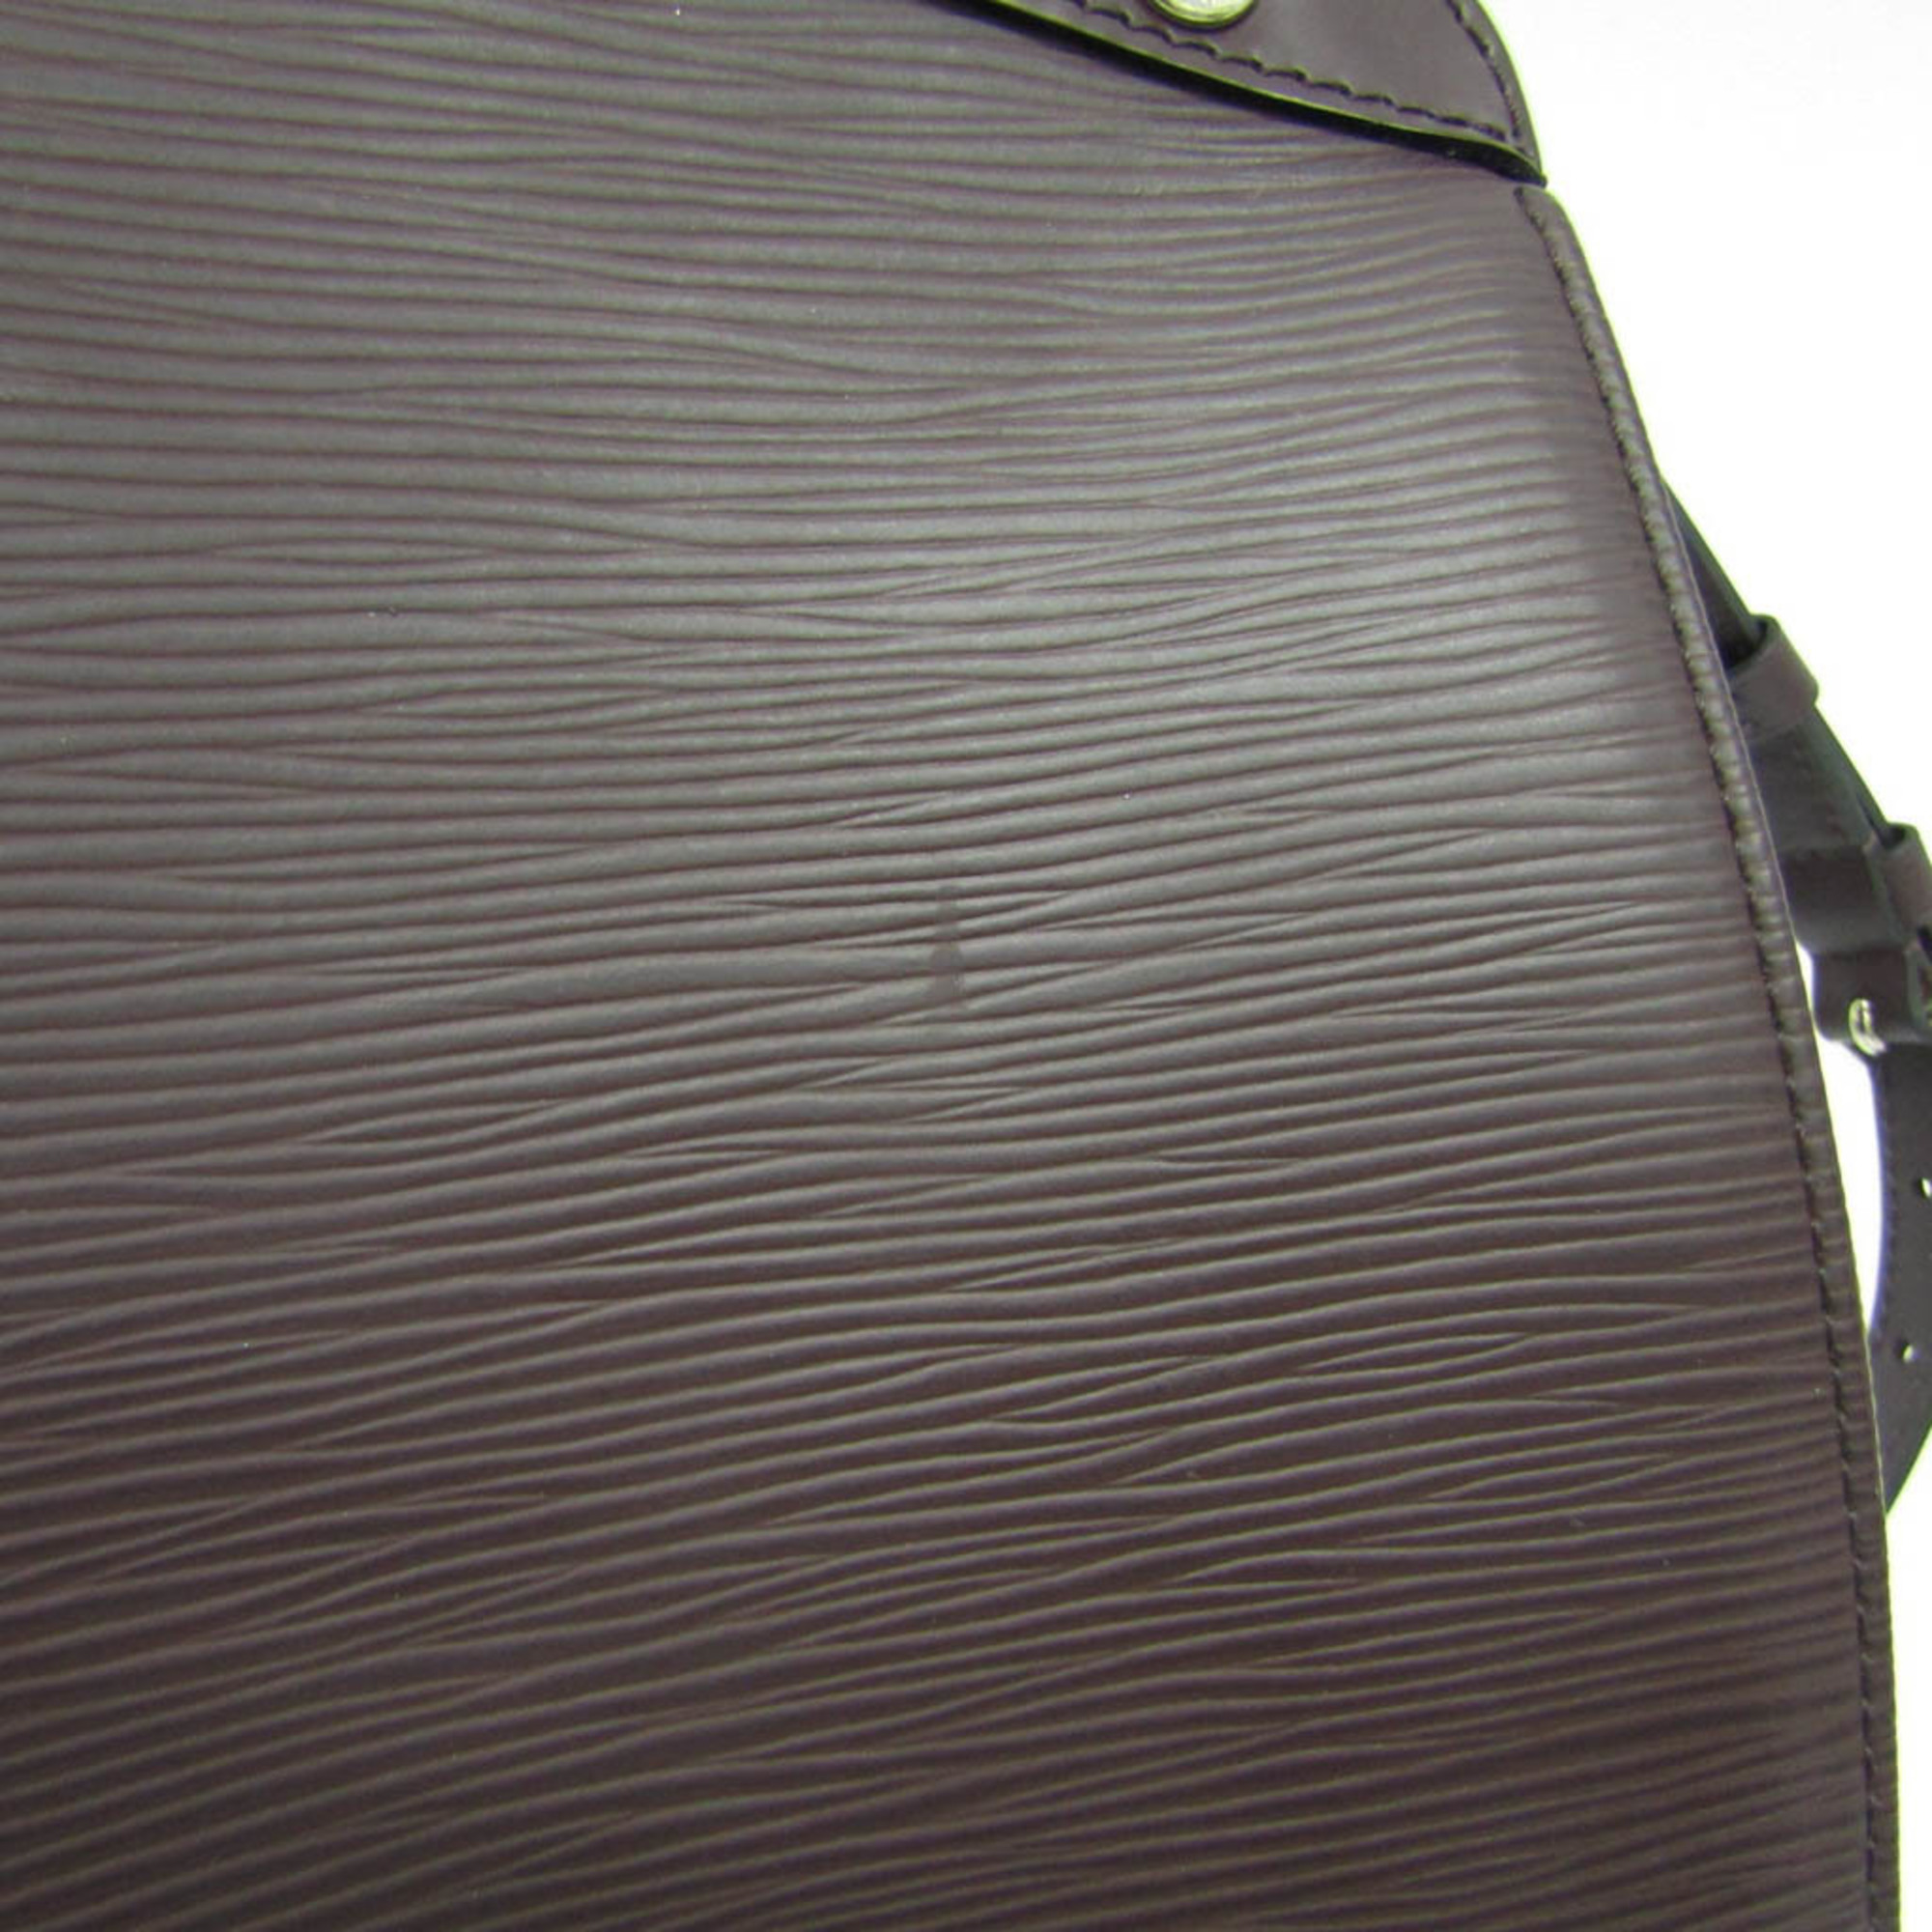 ルイ・ヴィトン(Louis Vuitton) エピ ブレアMM M40965 レディース ハンドバッグ,ショルダーバッグ ケッチュ